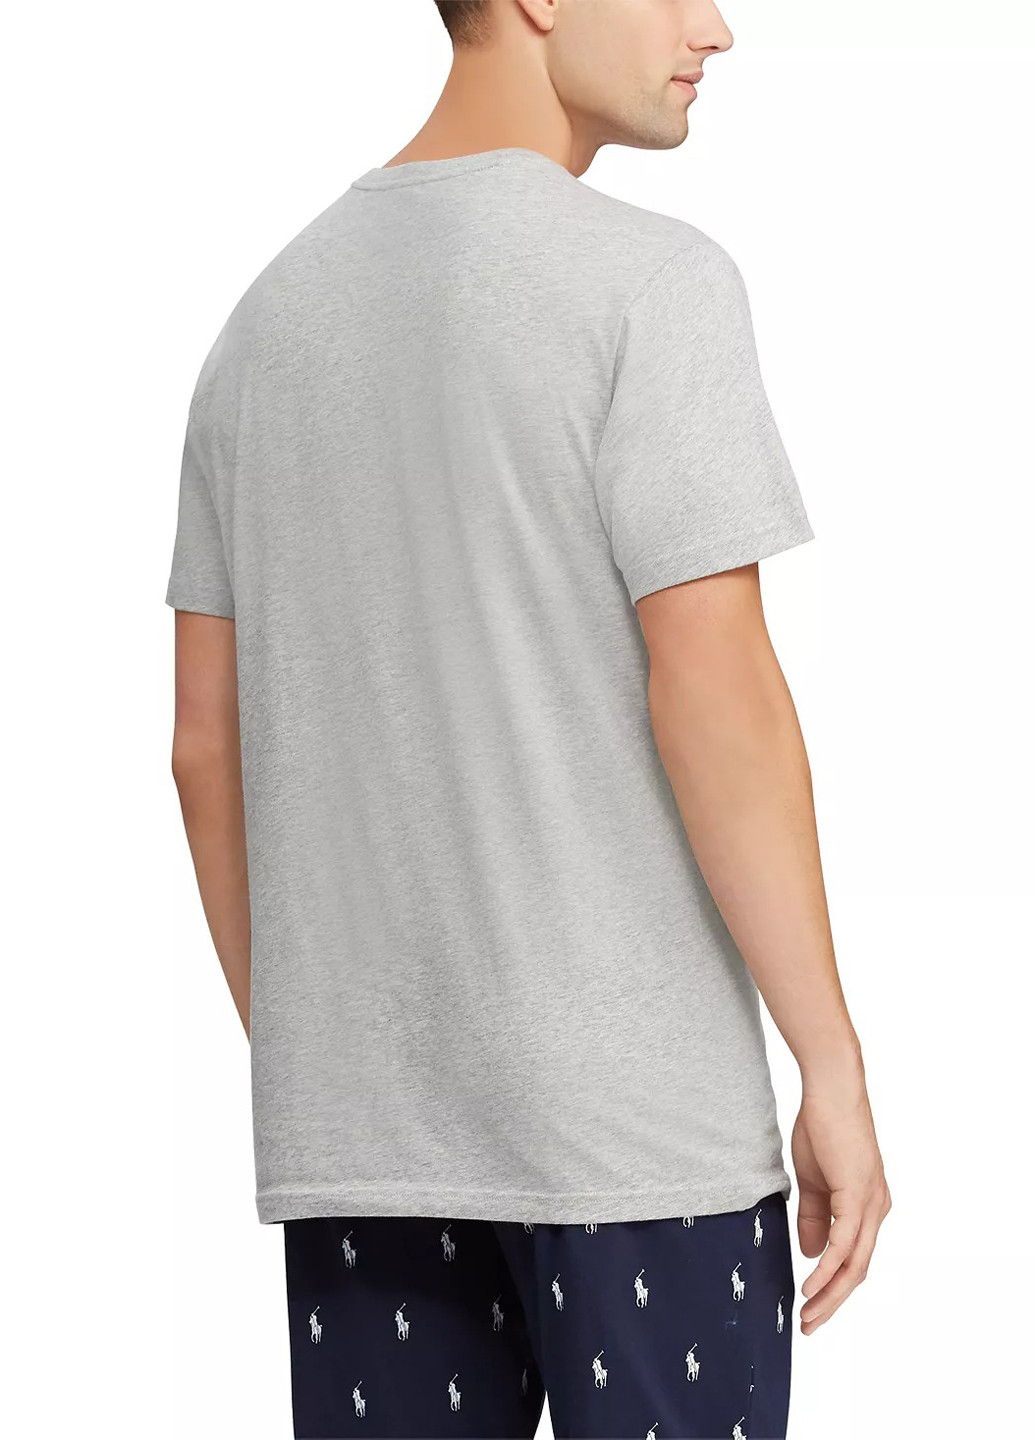 Світло-сіра футболка з коротким рукавом Ralph Lauren